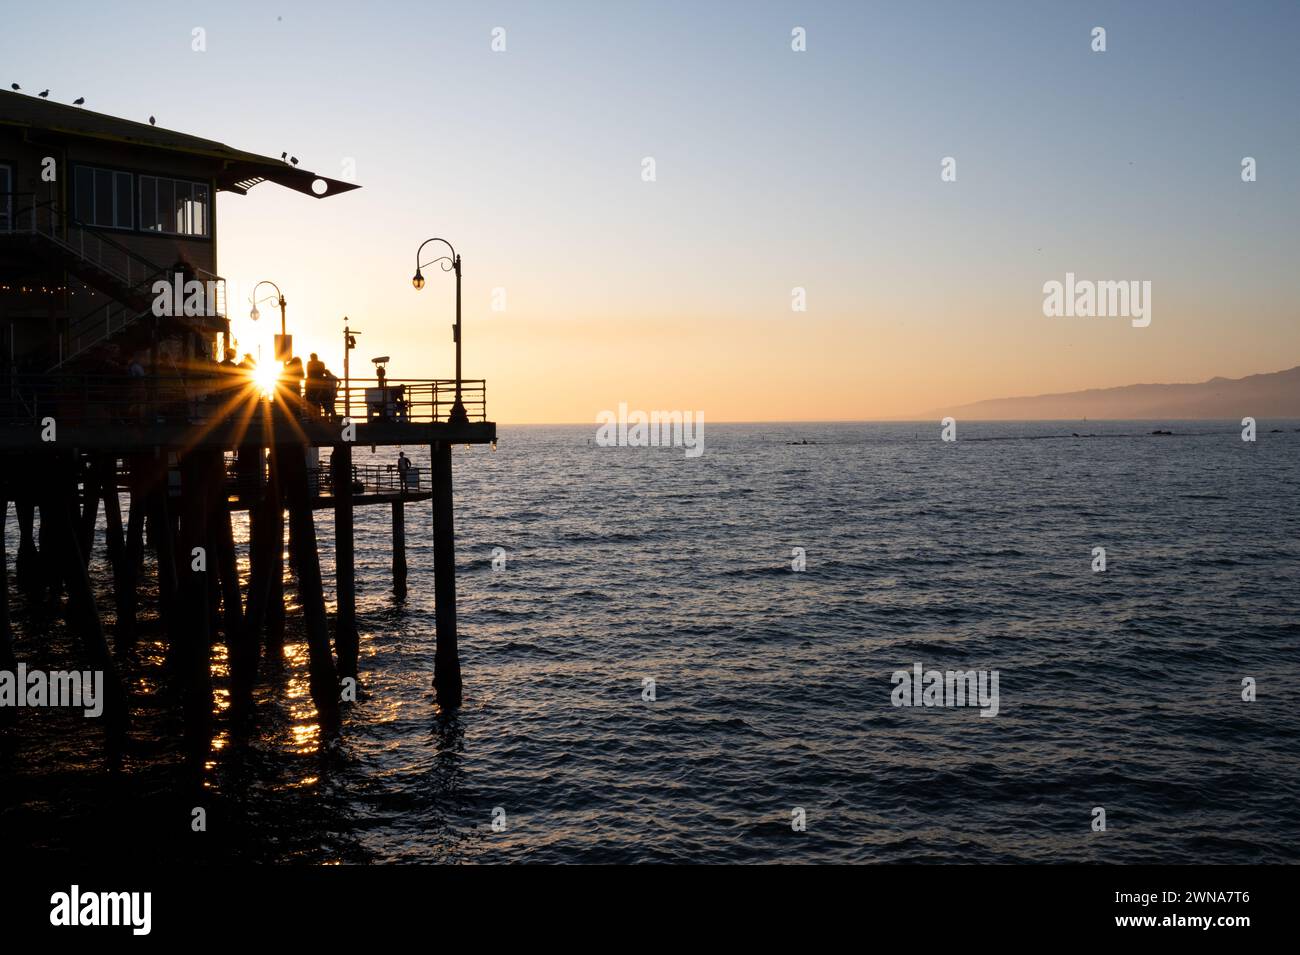 SANTA MONICA, CALIFORNIA, Stati Uniti: Il sole tramonta sull'Oceano Pacifico presso il famoso molo di Santa Monica a Santa Monica, California. Foto Stock